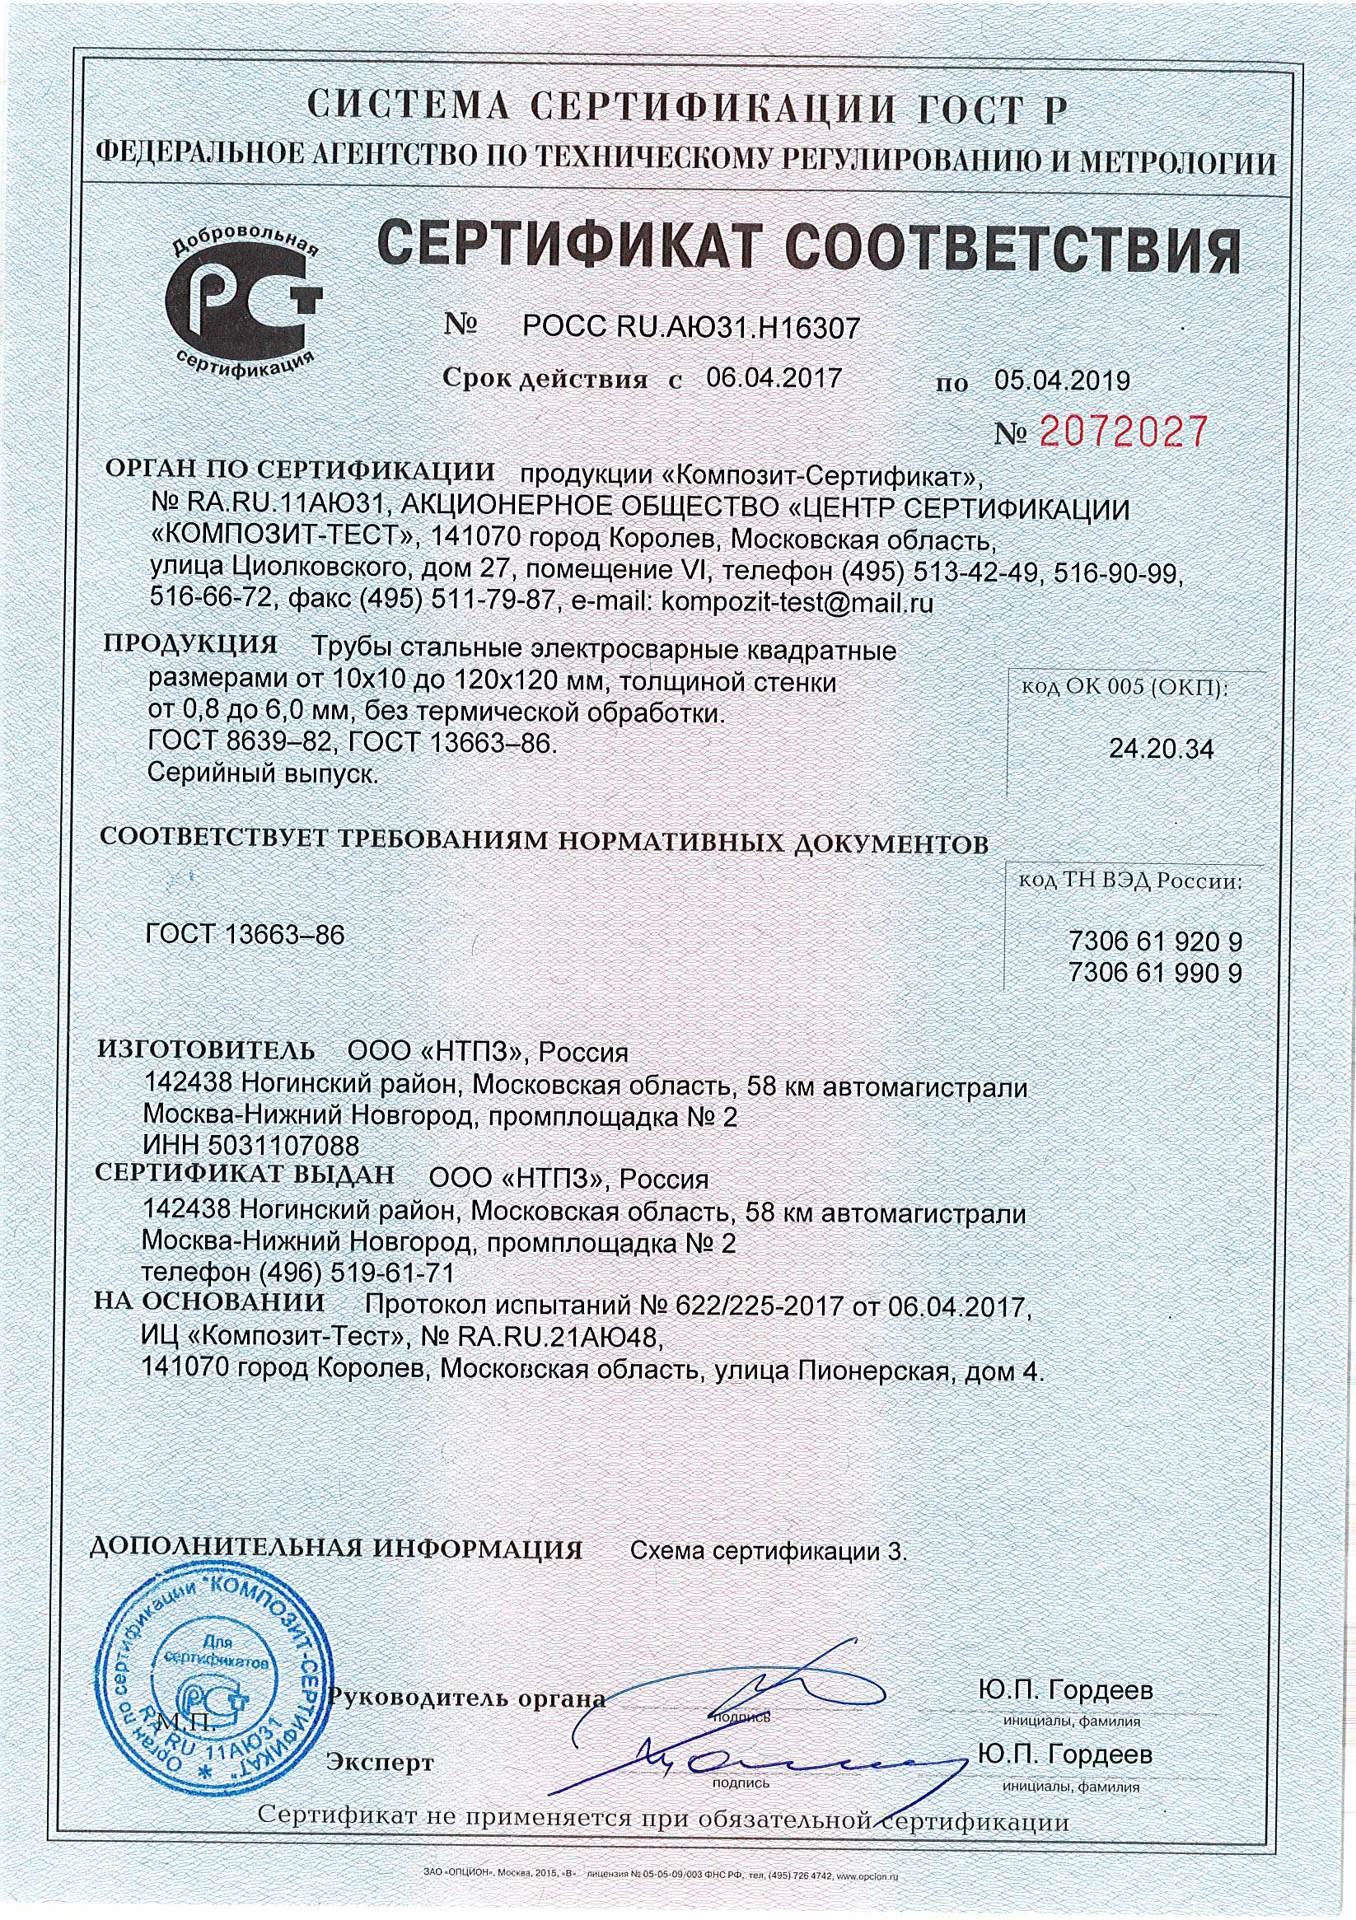 Сертификат соответствия квадратных труб ГОСТ 8639-82